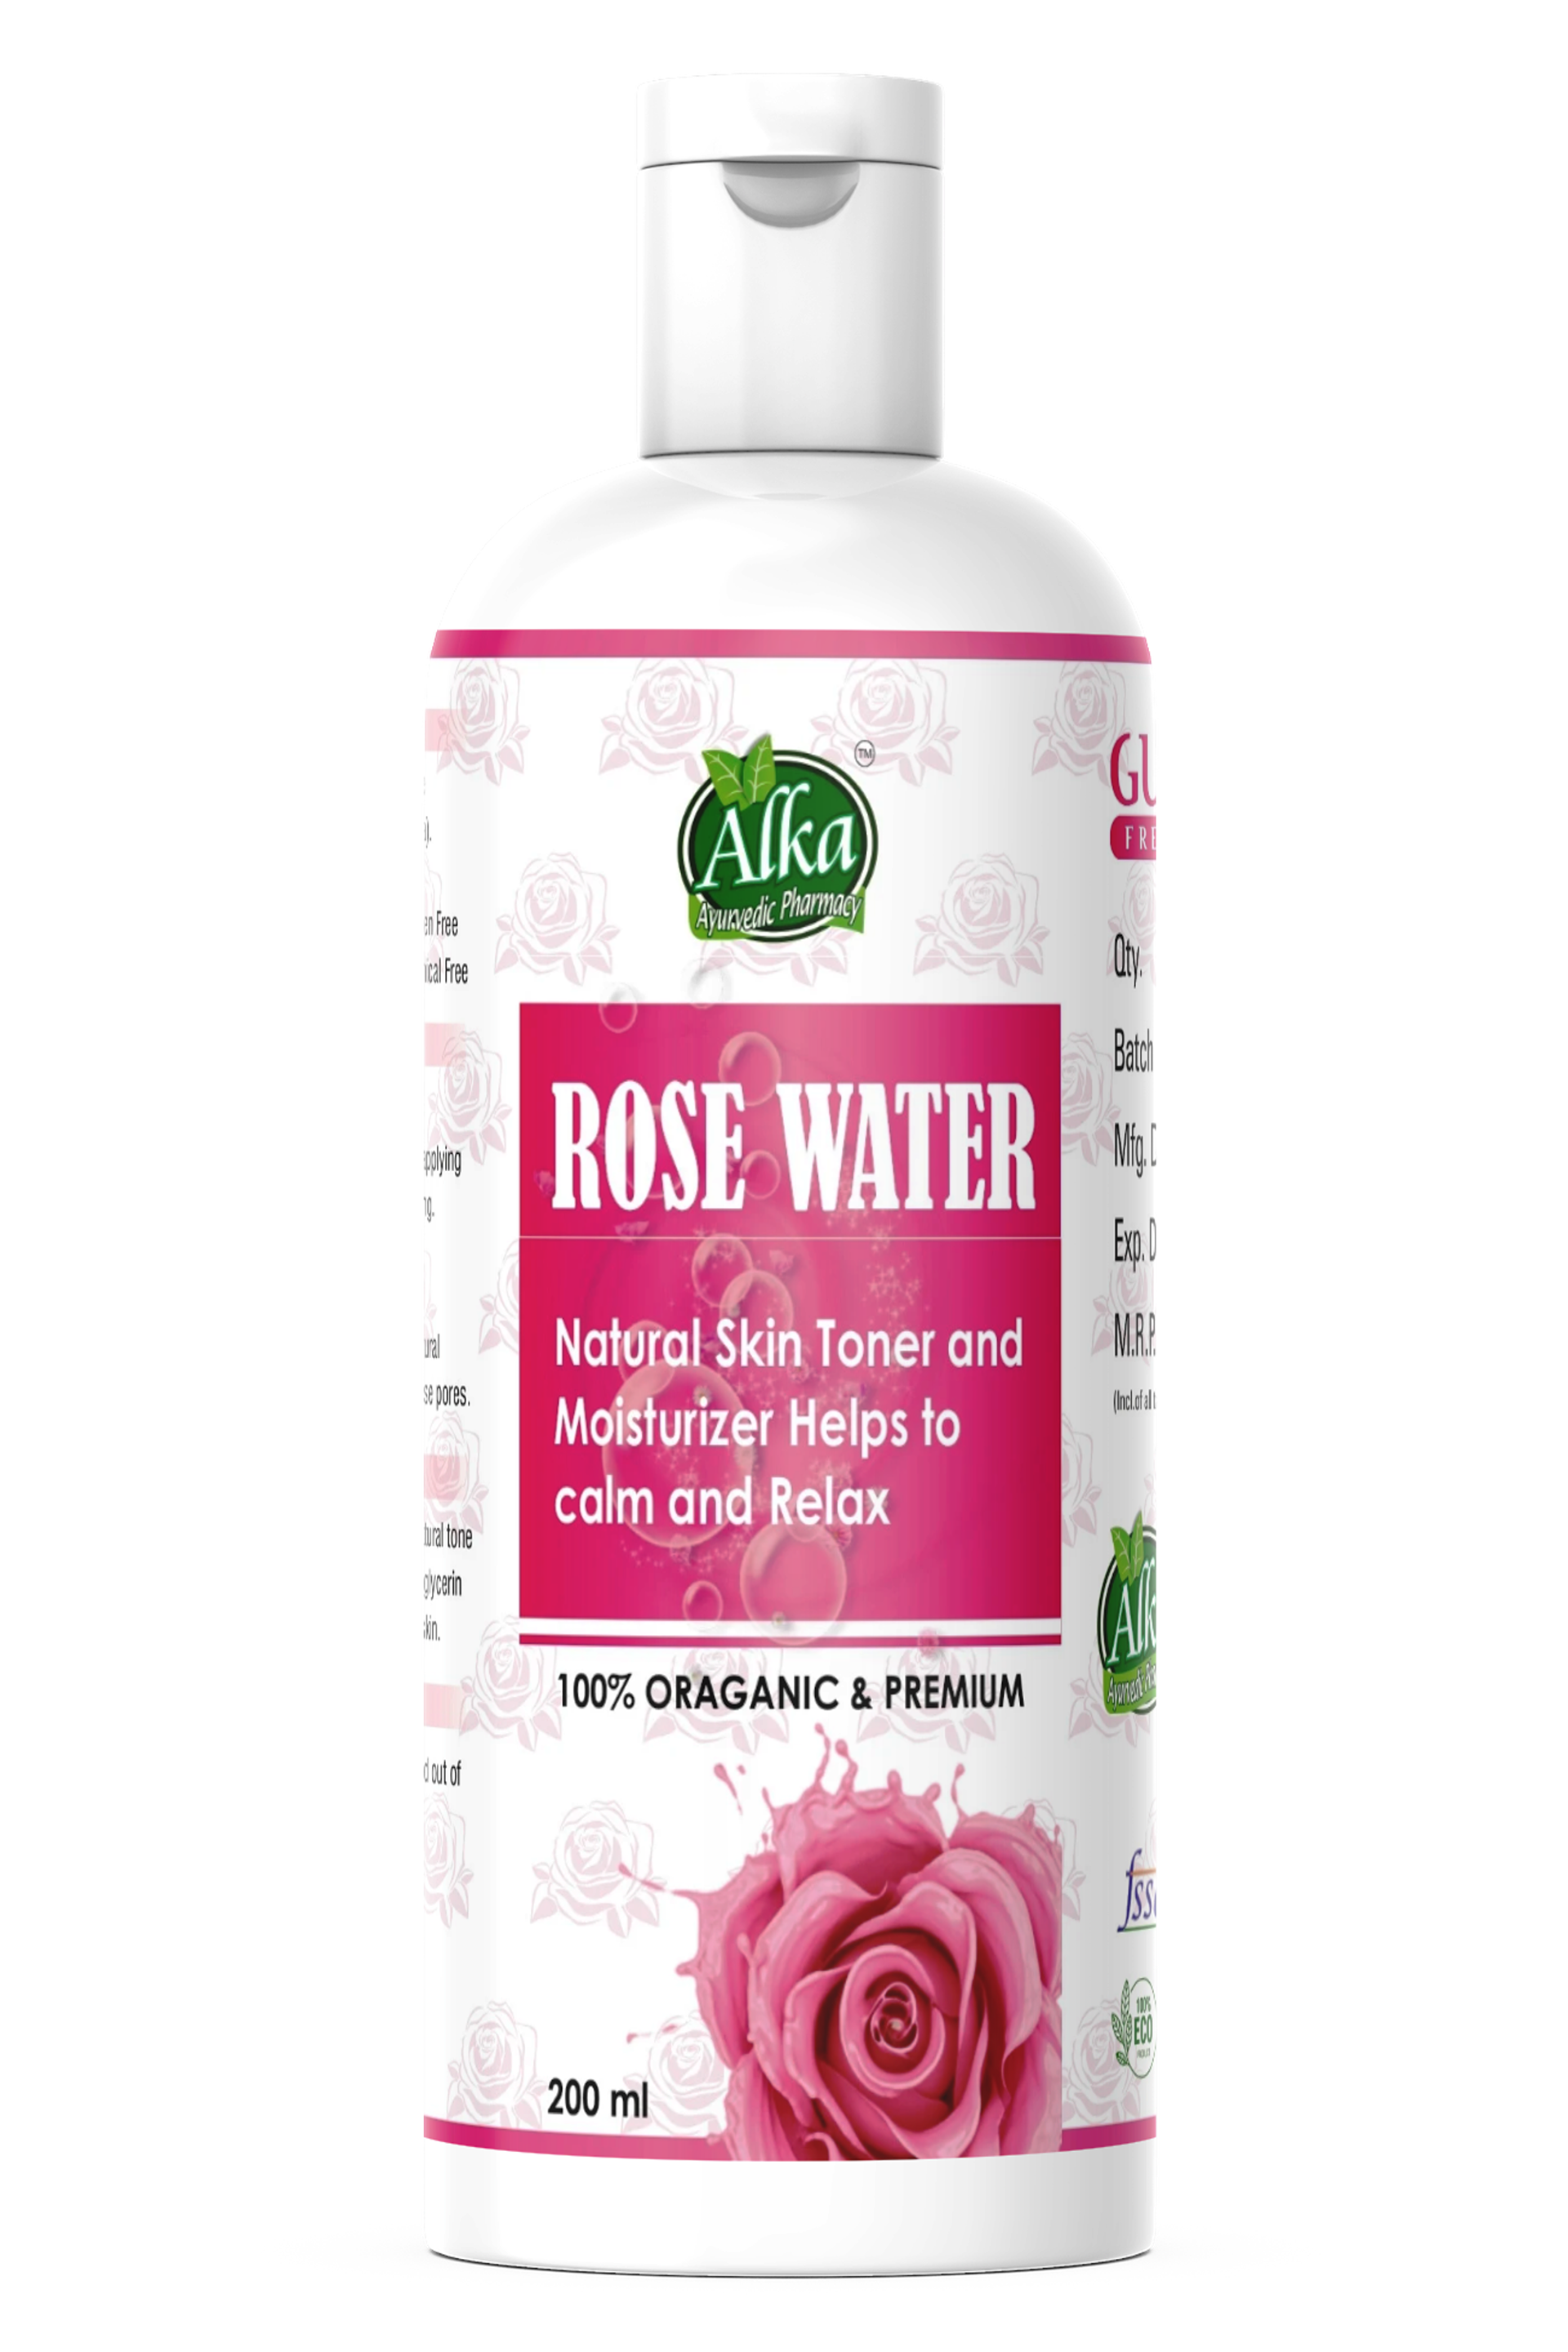  Organic & Natural Premium Rose Water/Skin Toner (Gulab Jal)+Multani Mitti Free